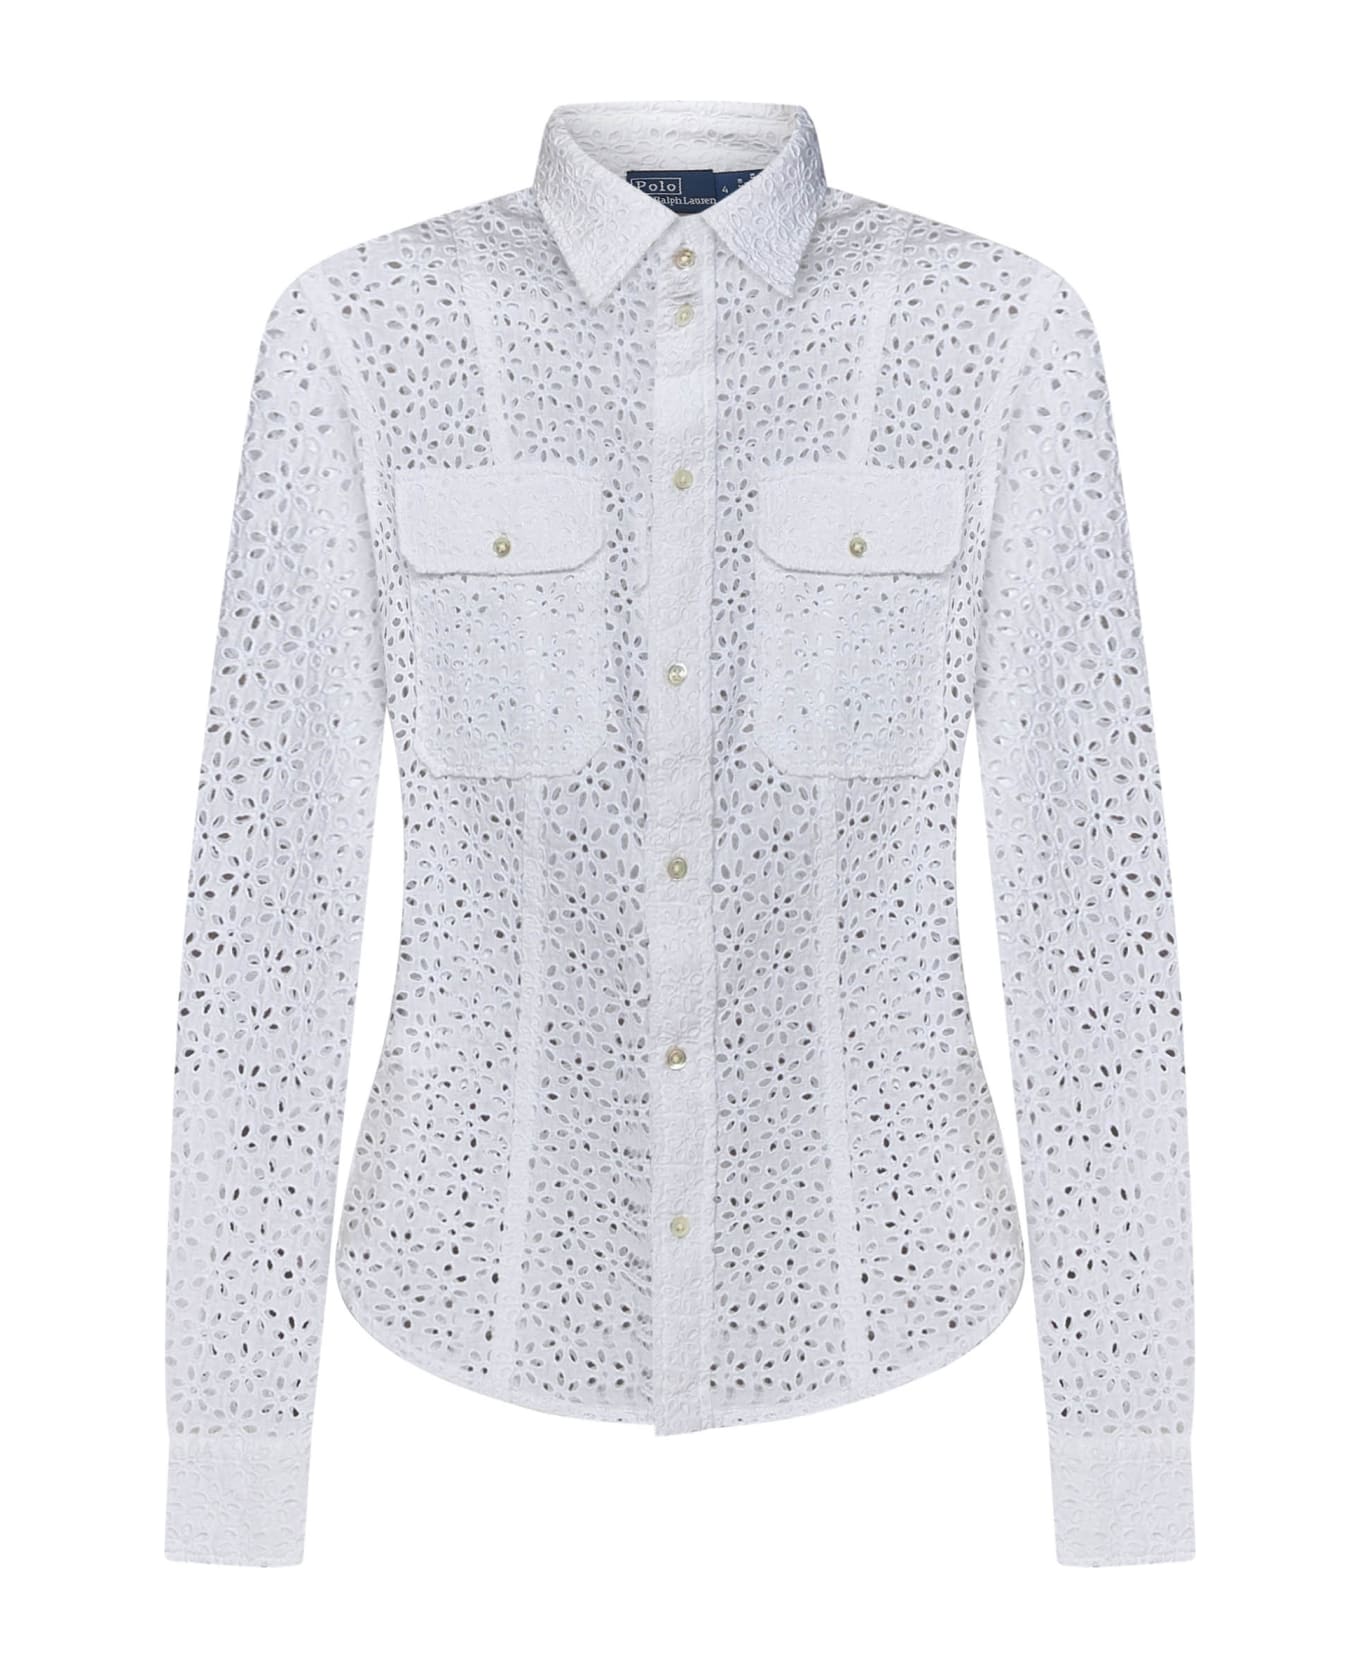 Polo Ralph Lauren Ralph Lauren Shirt - White シャツ